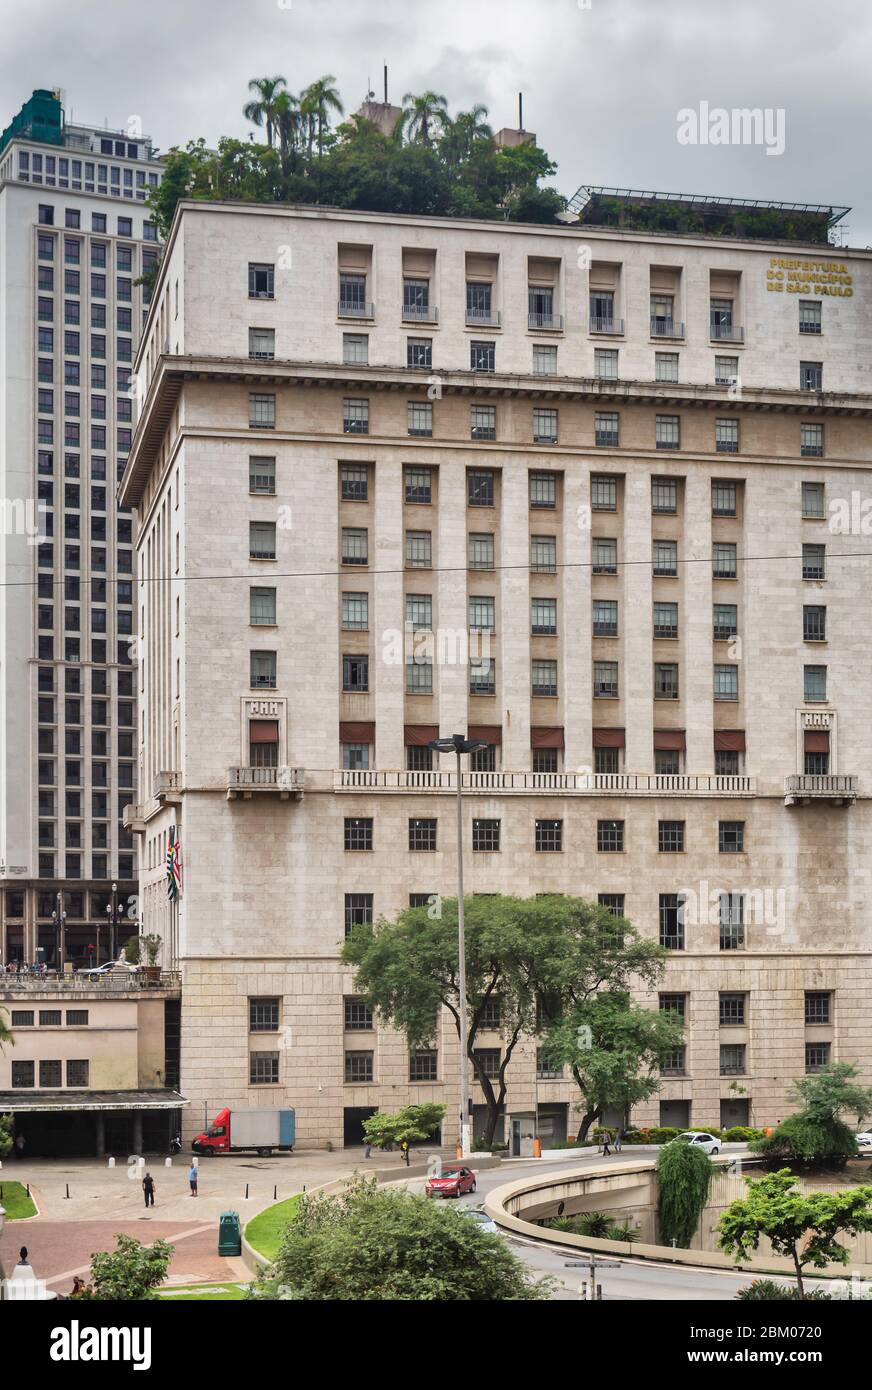 Bâtiment Matarazzo, hôtel de ville de Sao Paulo, années 1930, Marcello Piacentini, Sao Paulo, Brésil Banque D'Images